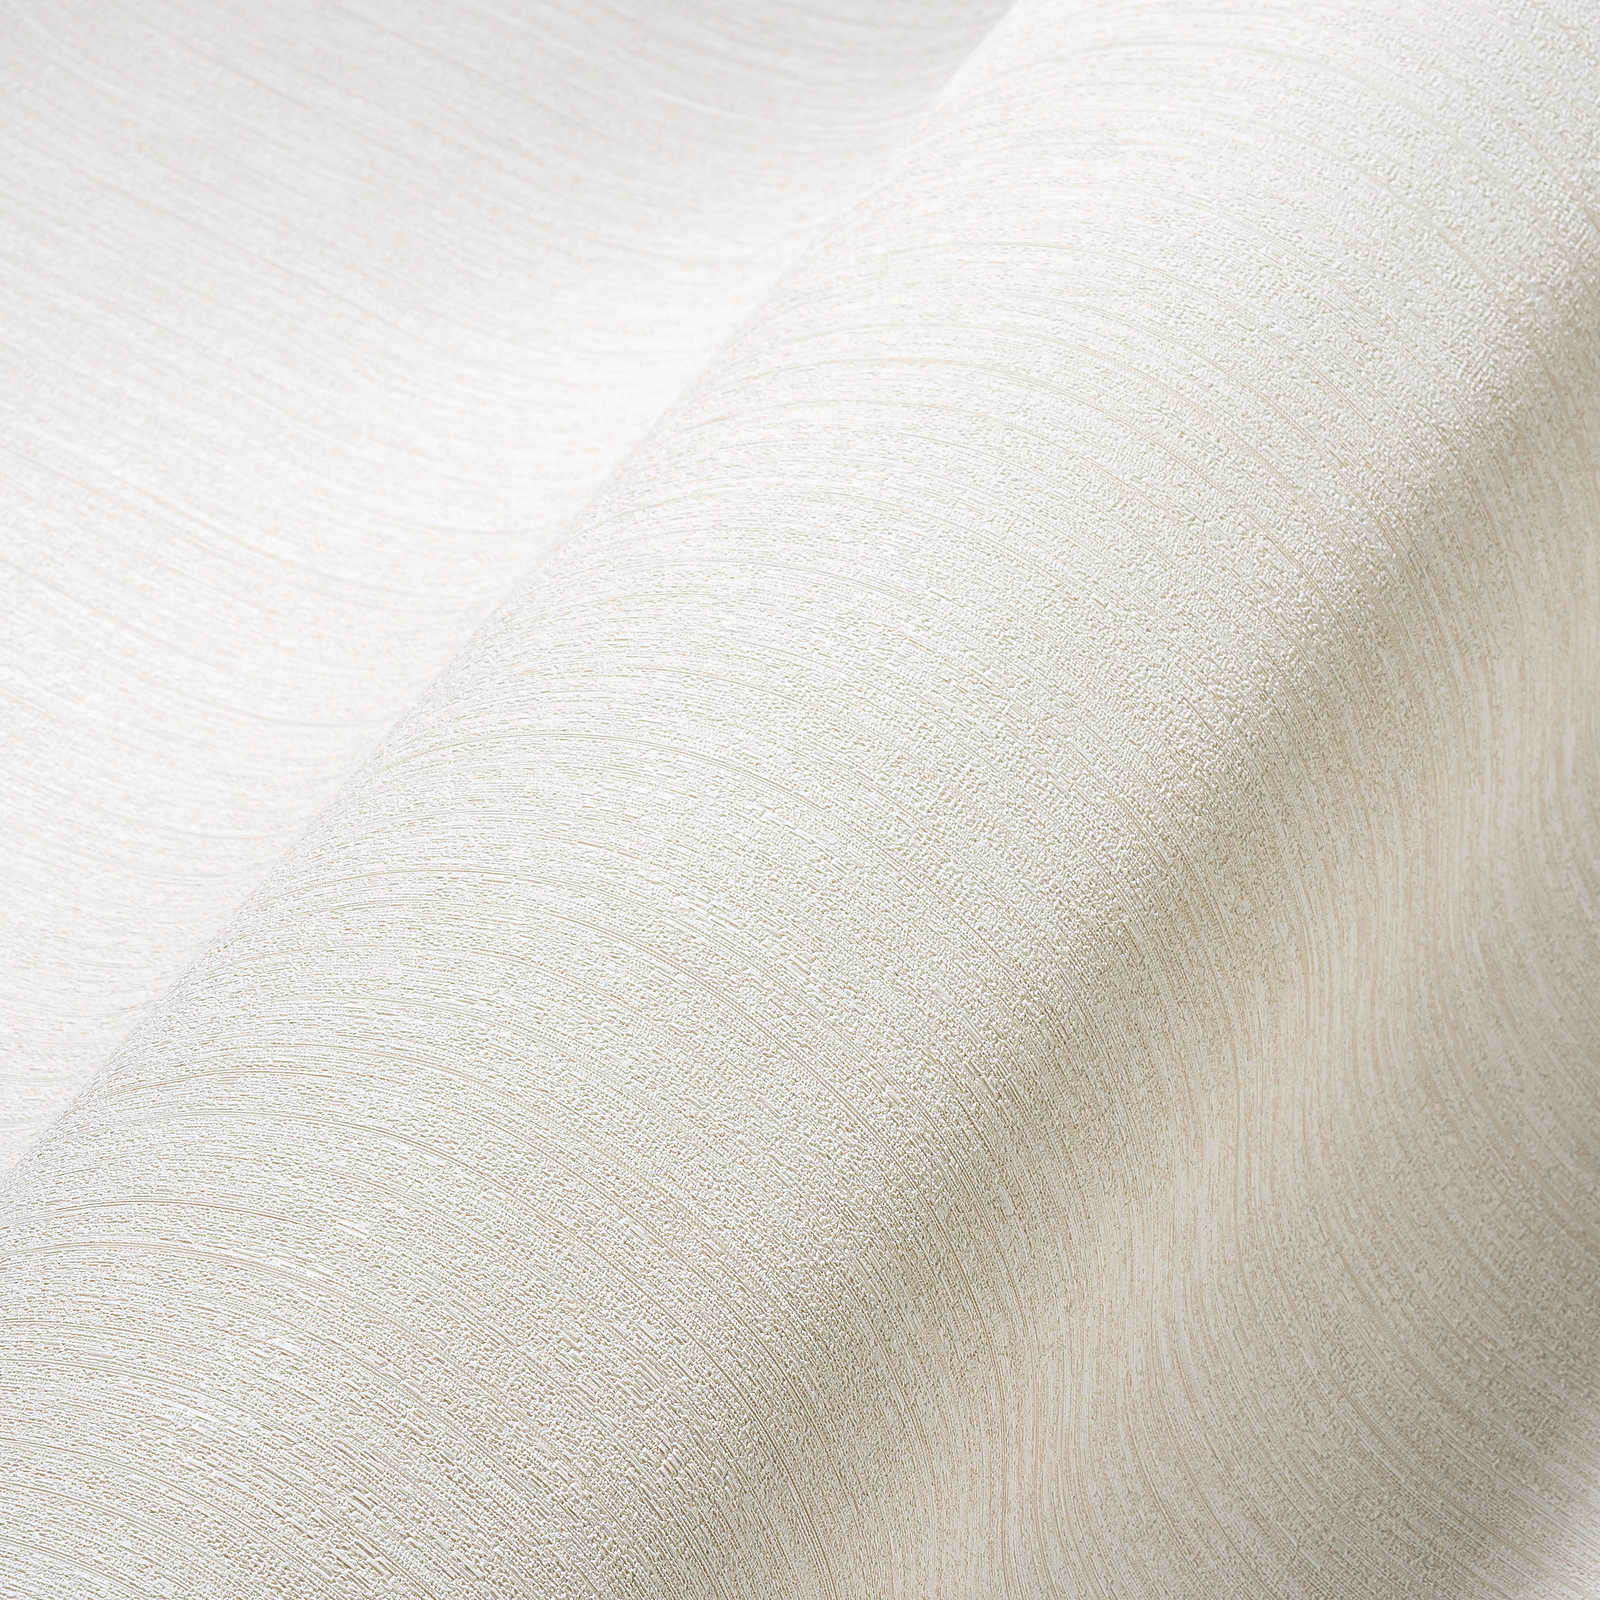             Crèmewit zijdemat behang met natuurlijk structuureffect
        